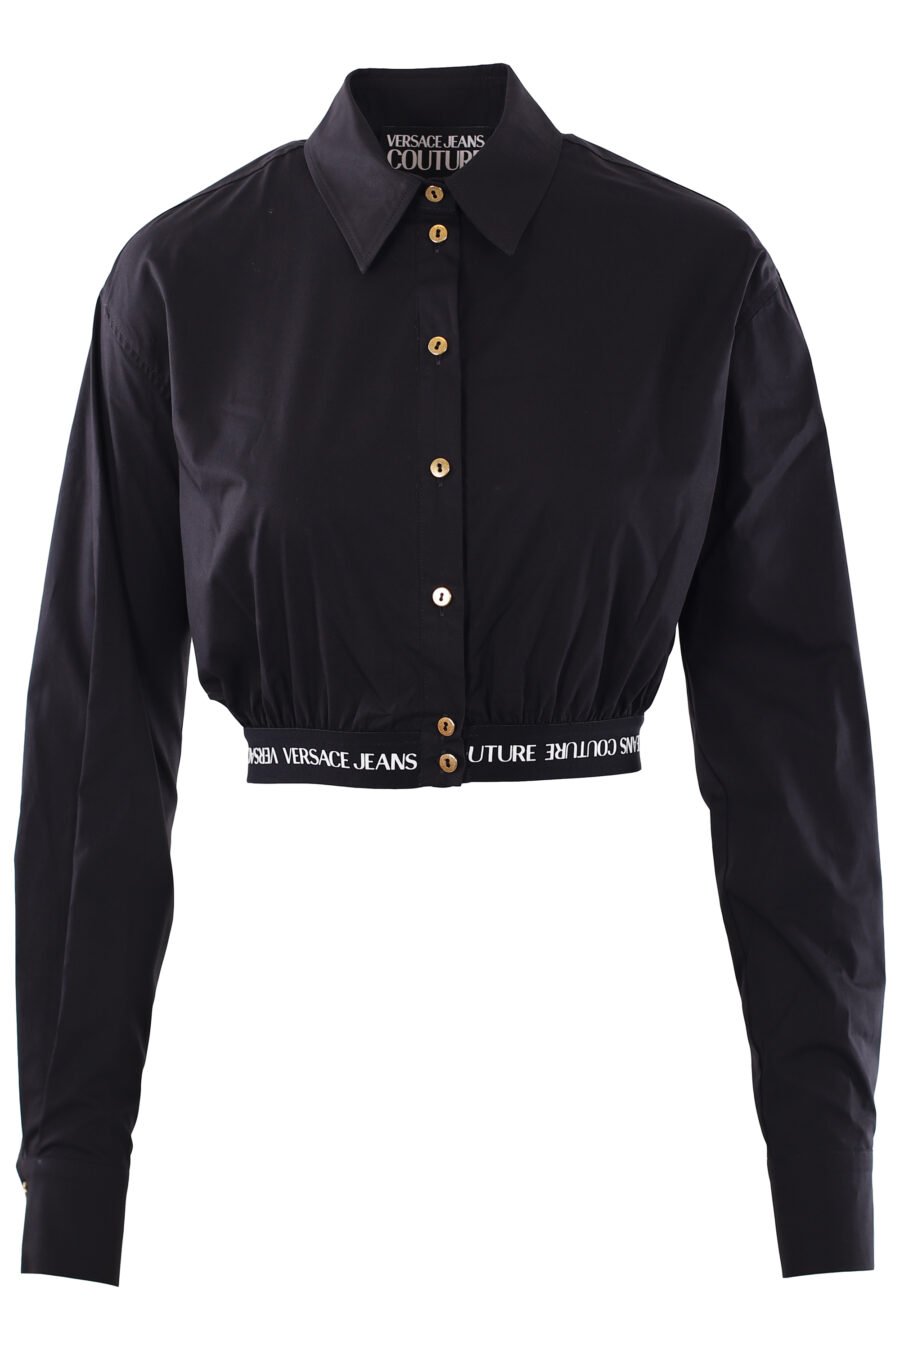 Camisa negra cropped de manga larga con logo en cinta - IMG 0277